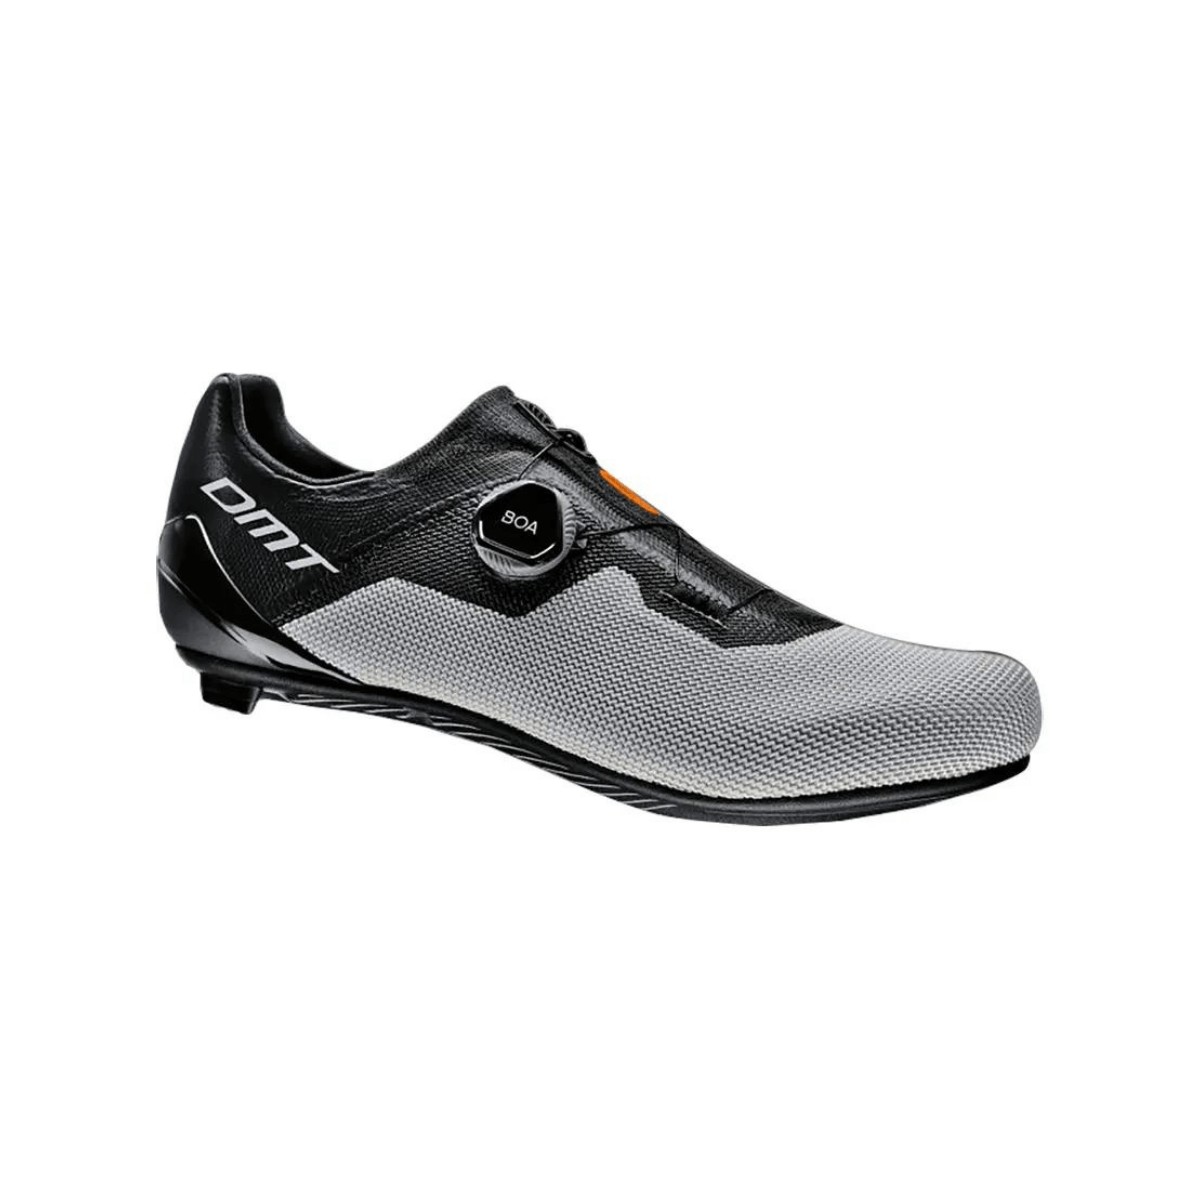 DMT KR4 Shoes Black Silver, Size 43 - EUR